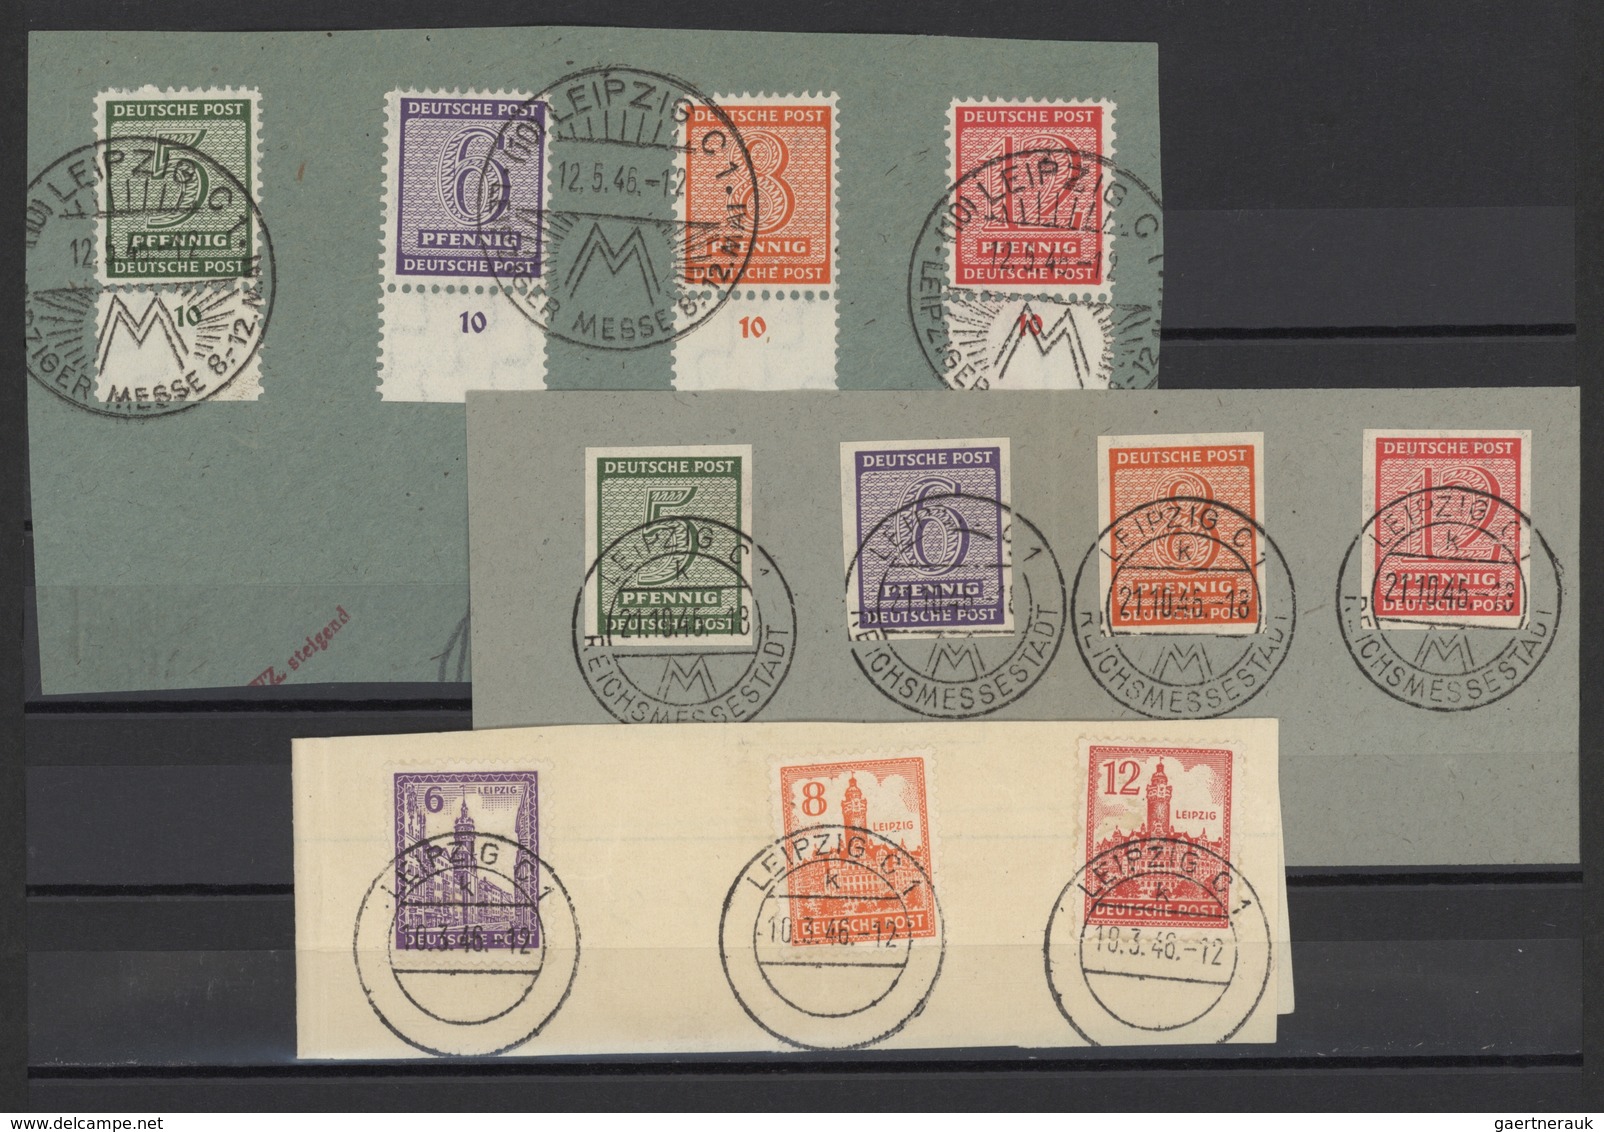 Sowjetische Zone: 1945/1946, meist gestempelte Zusammenstellung, dabei großformatiges Briefstück mit